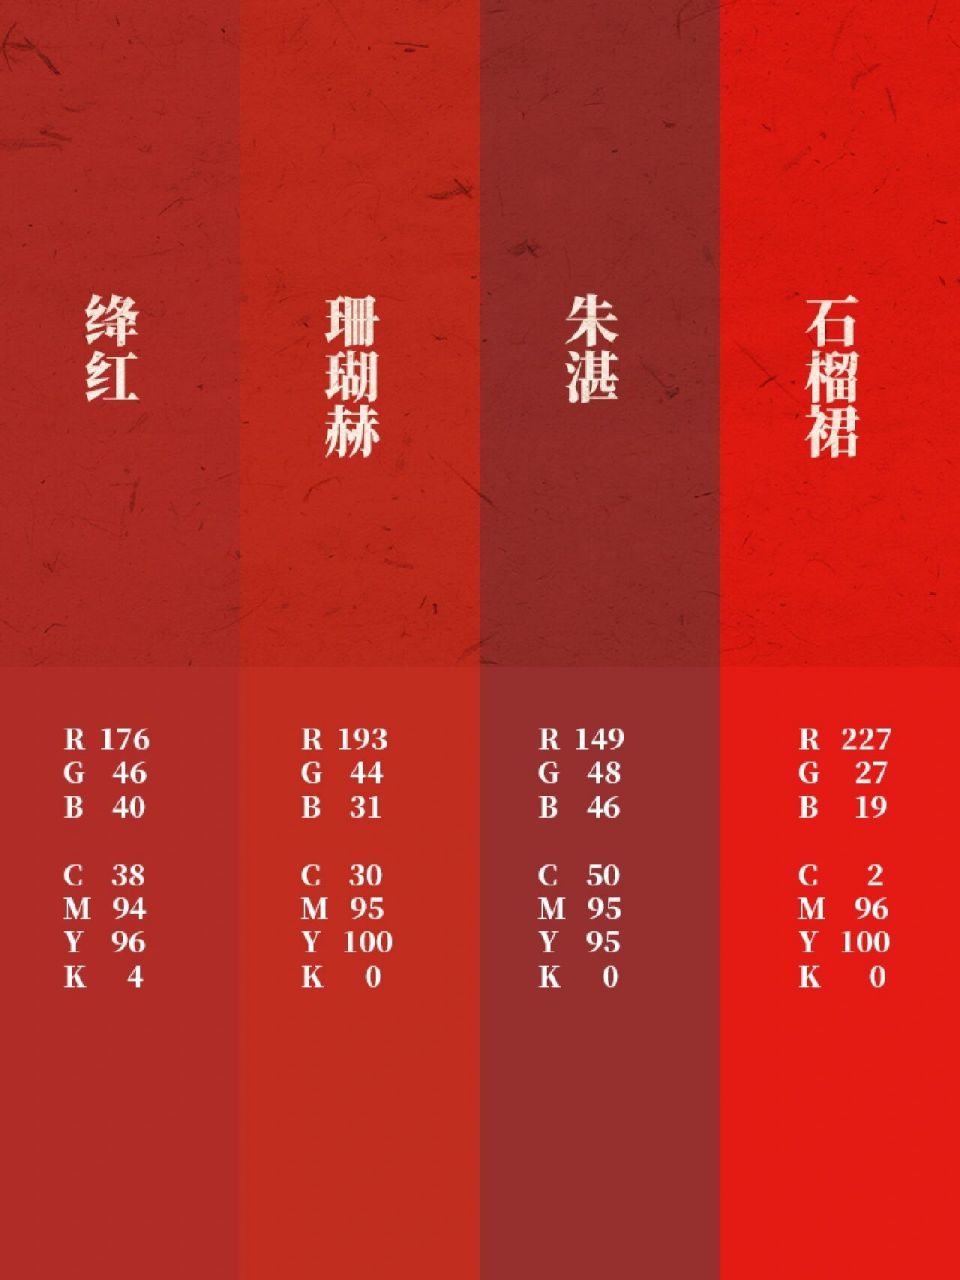 中国传统色丨故宫·新年红 92如果奇迹有颜色,那一定是中国红 有